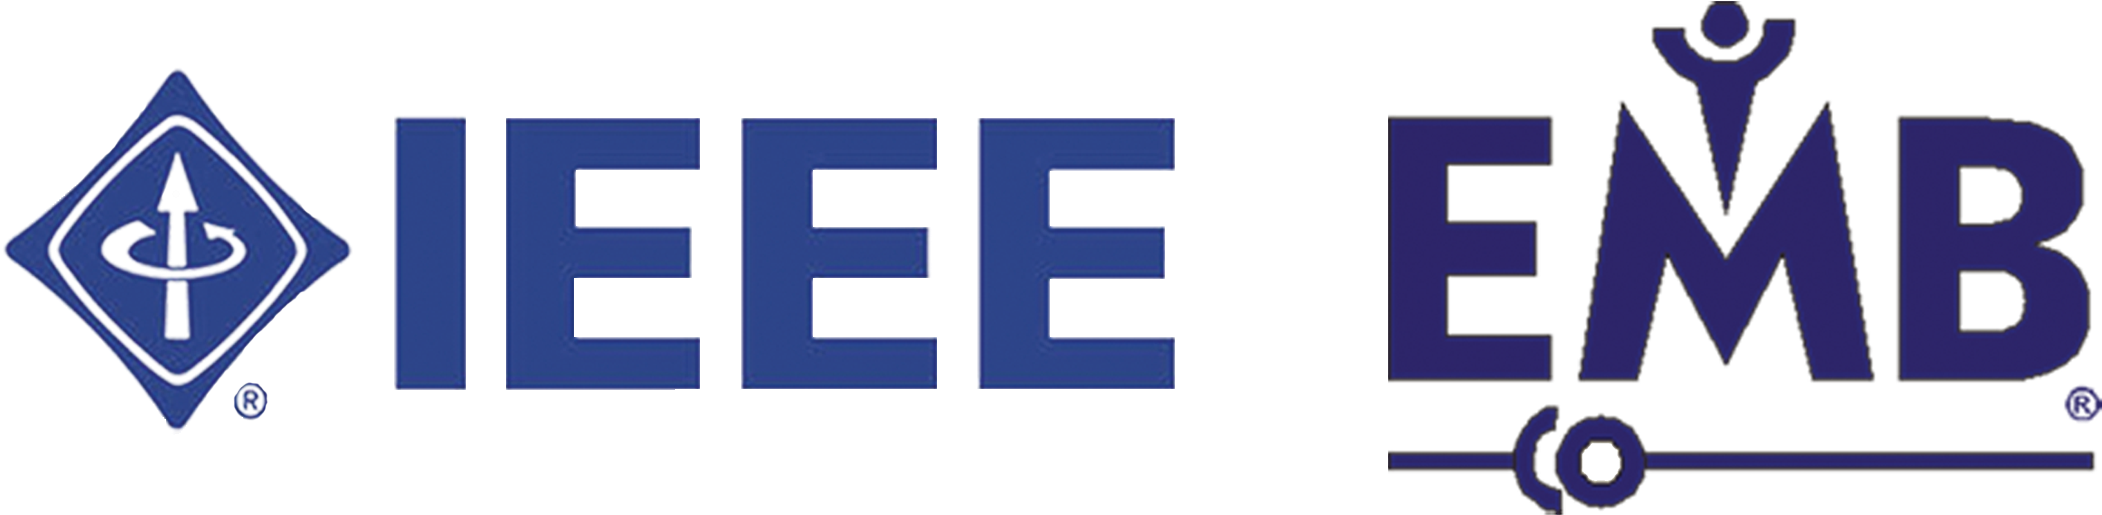 Program Logo - Ieee Embs Clipart (2449x732), Png Download